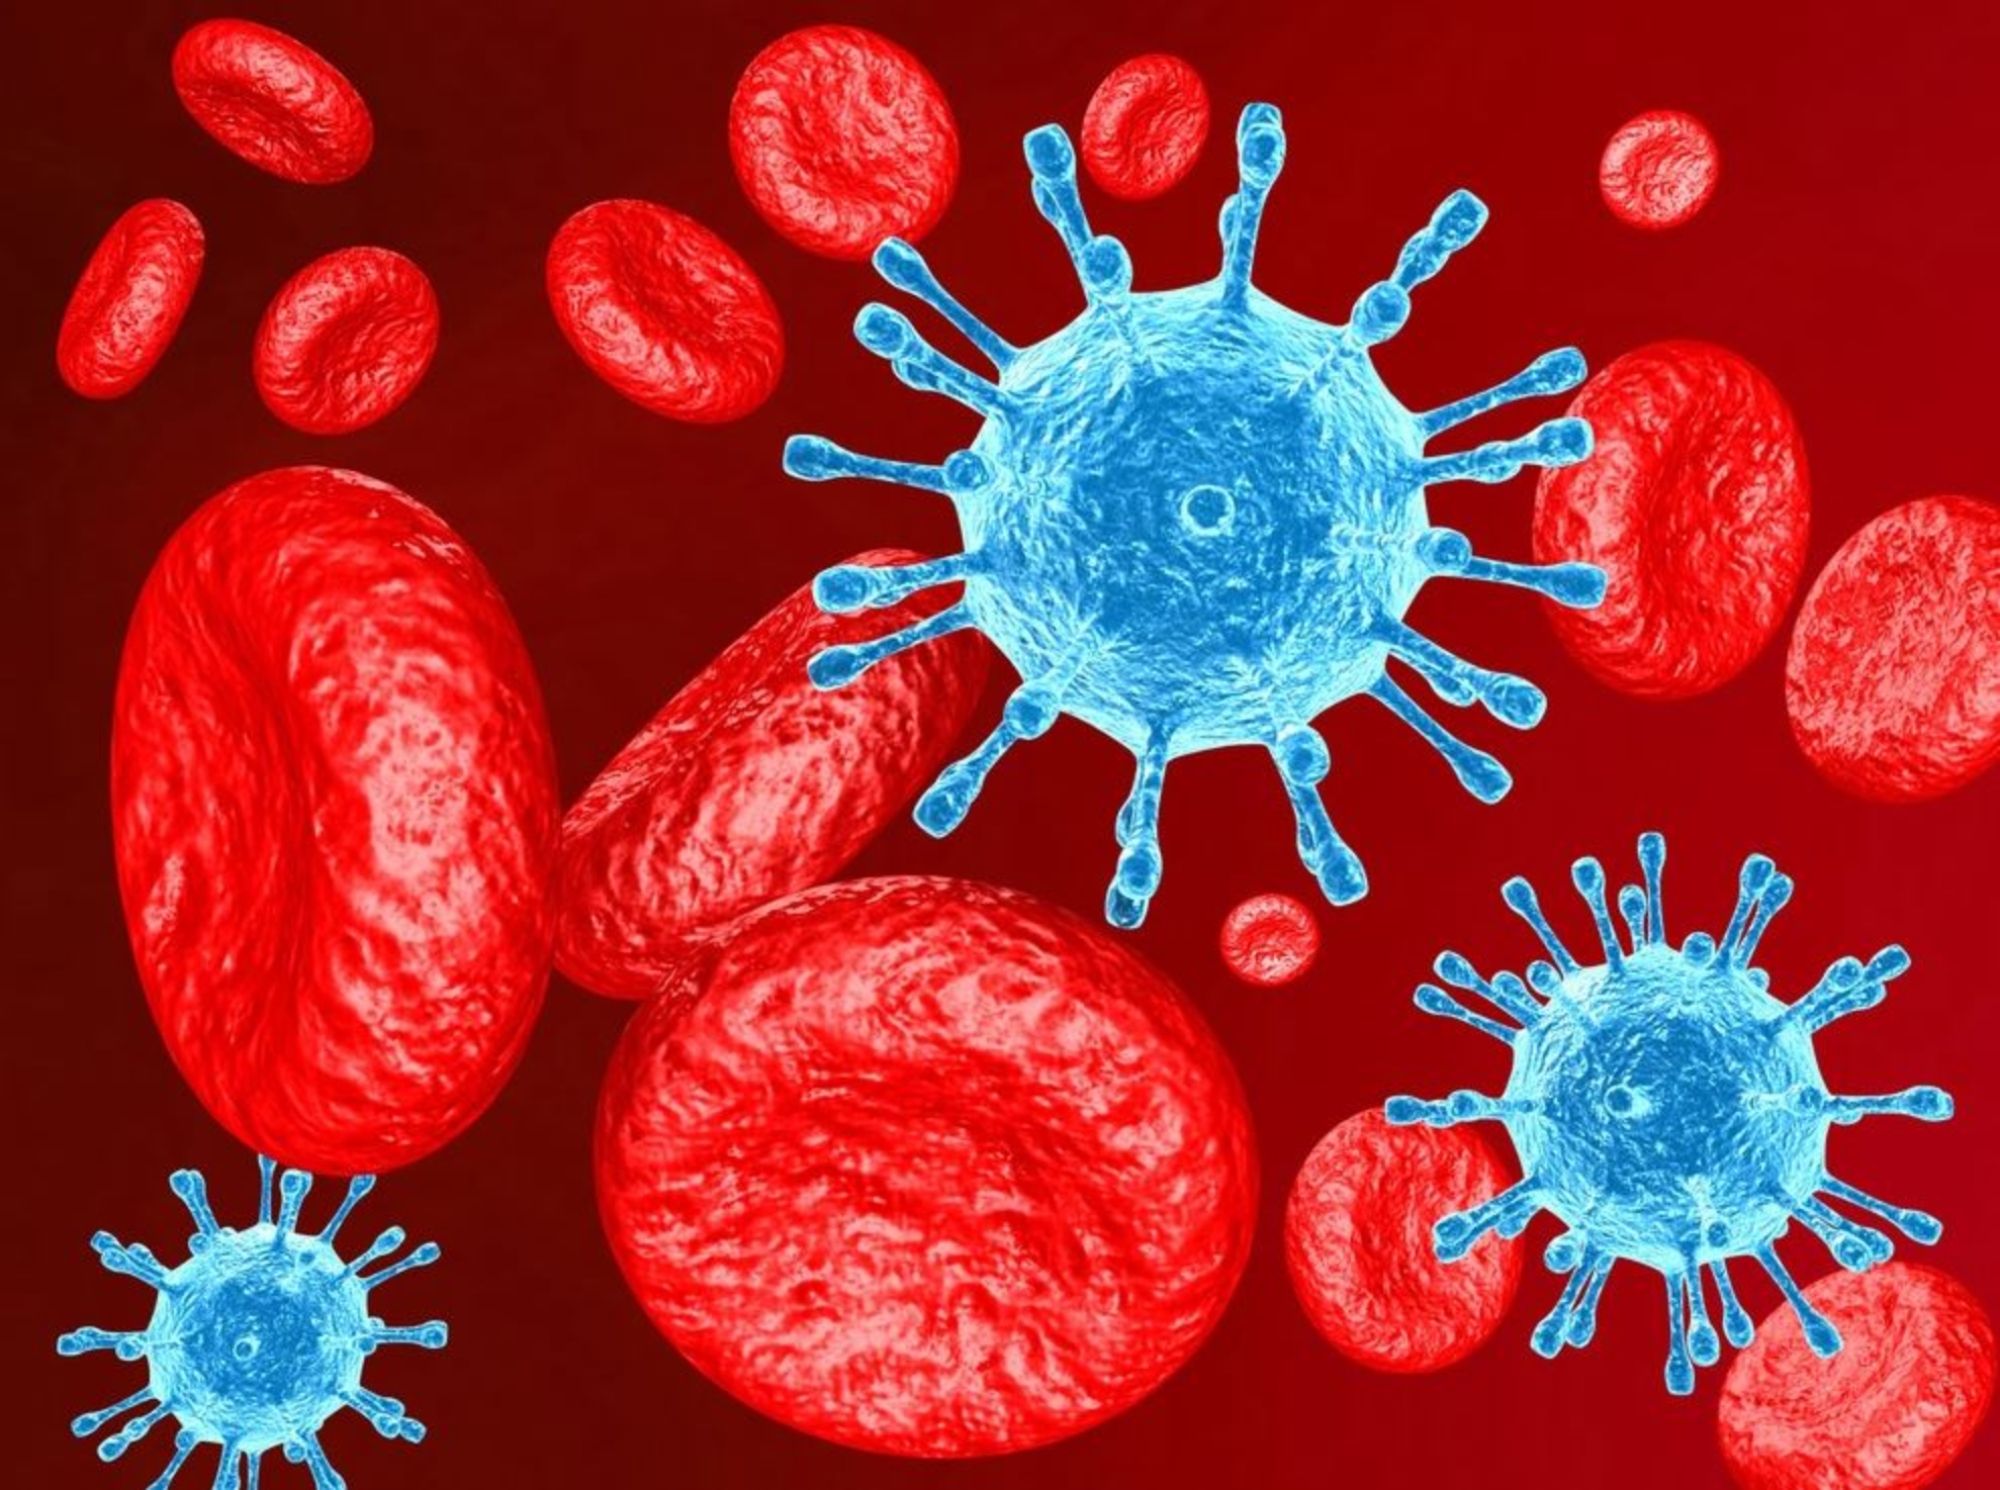 Các giai đoạn của HIV ảnh hưởng đến sức khỏe cơ thể